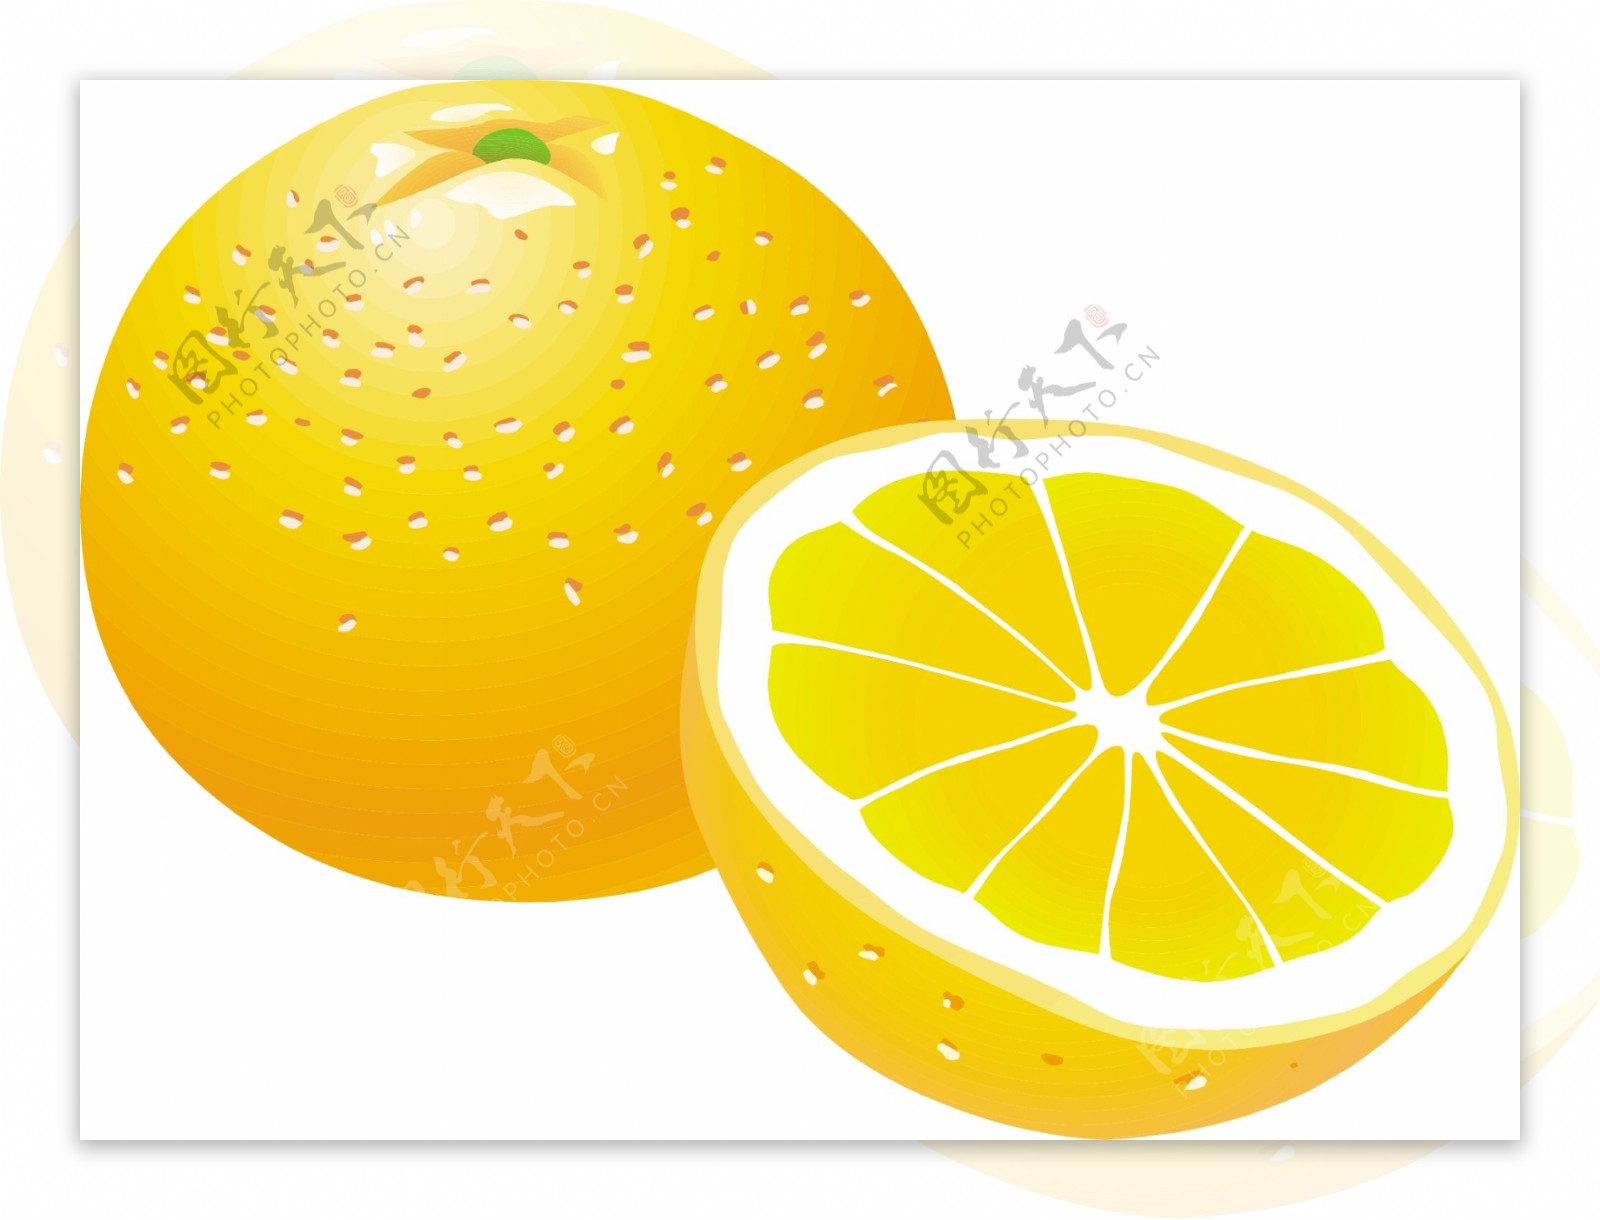 柑橘类水果10